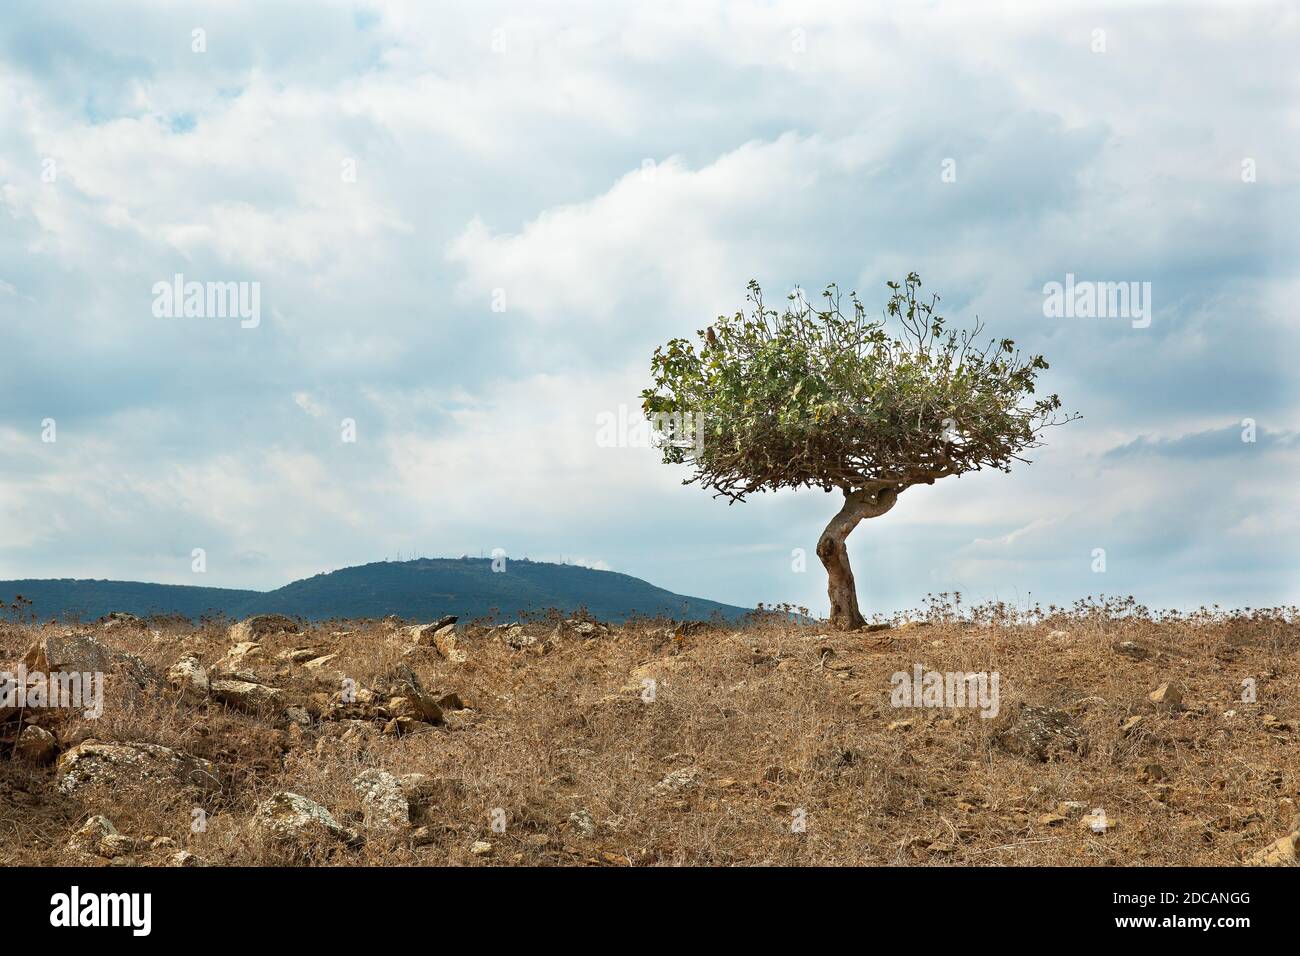 árbol solitario contra el fondo del cielo y las nubes en Israel Foto de stock